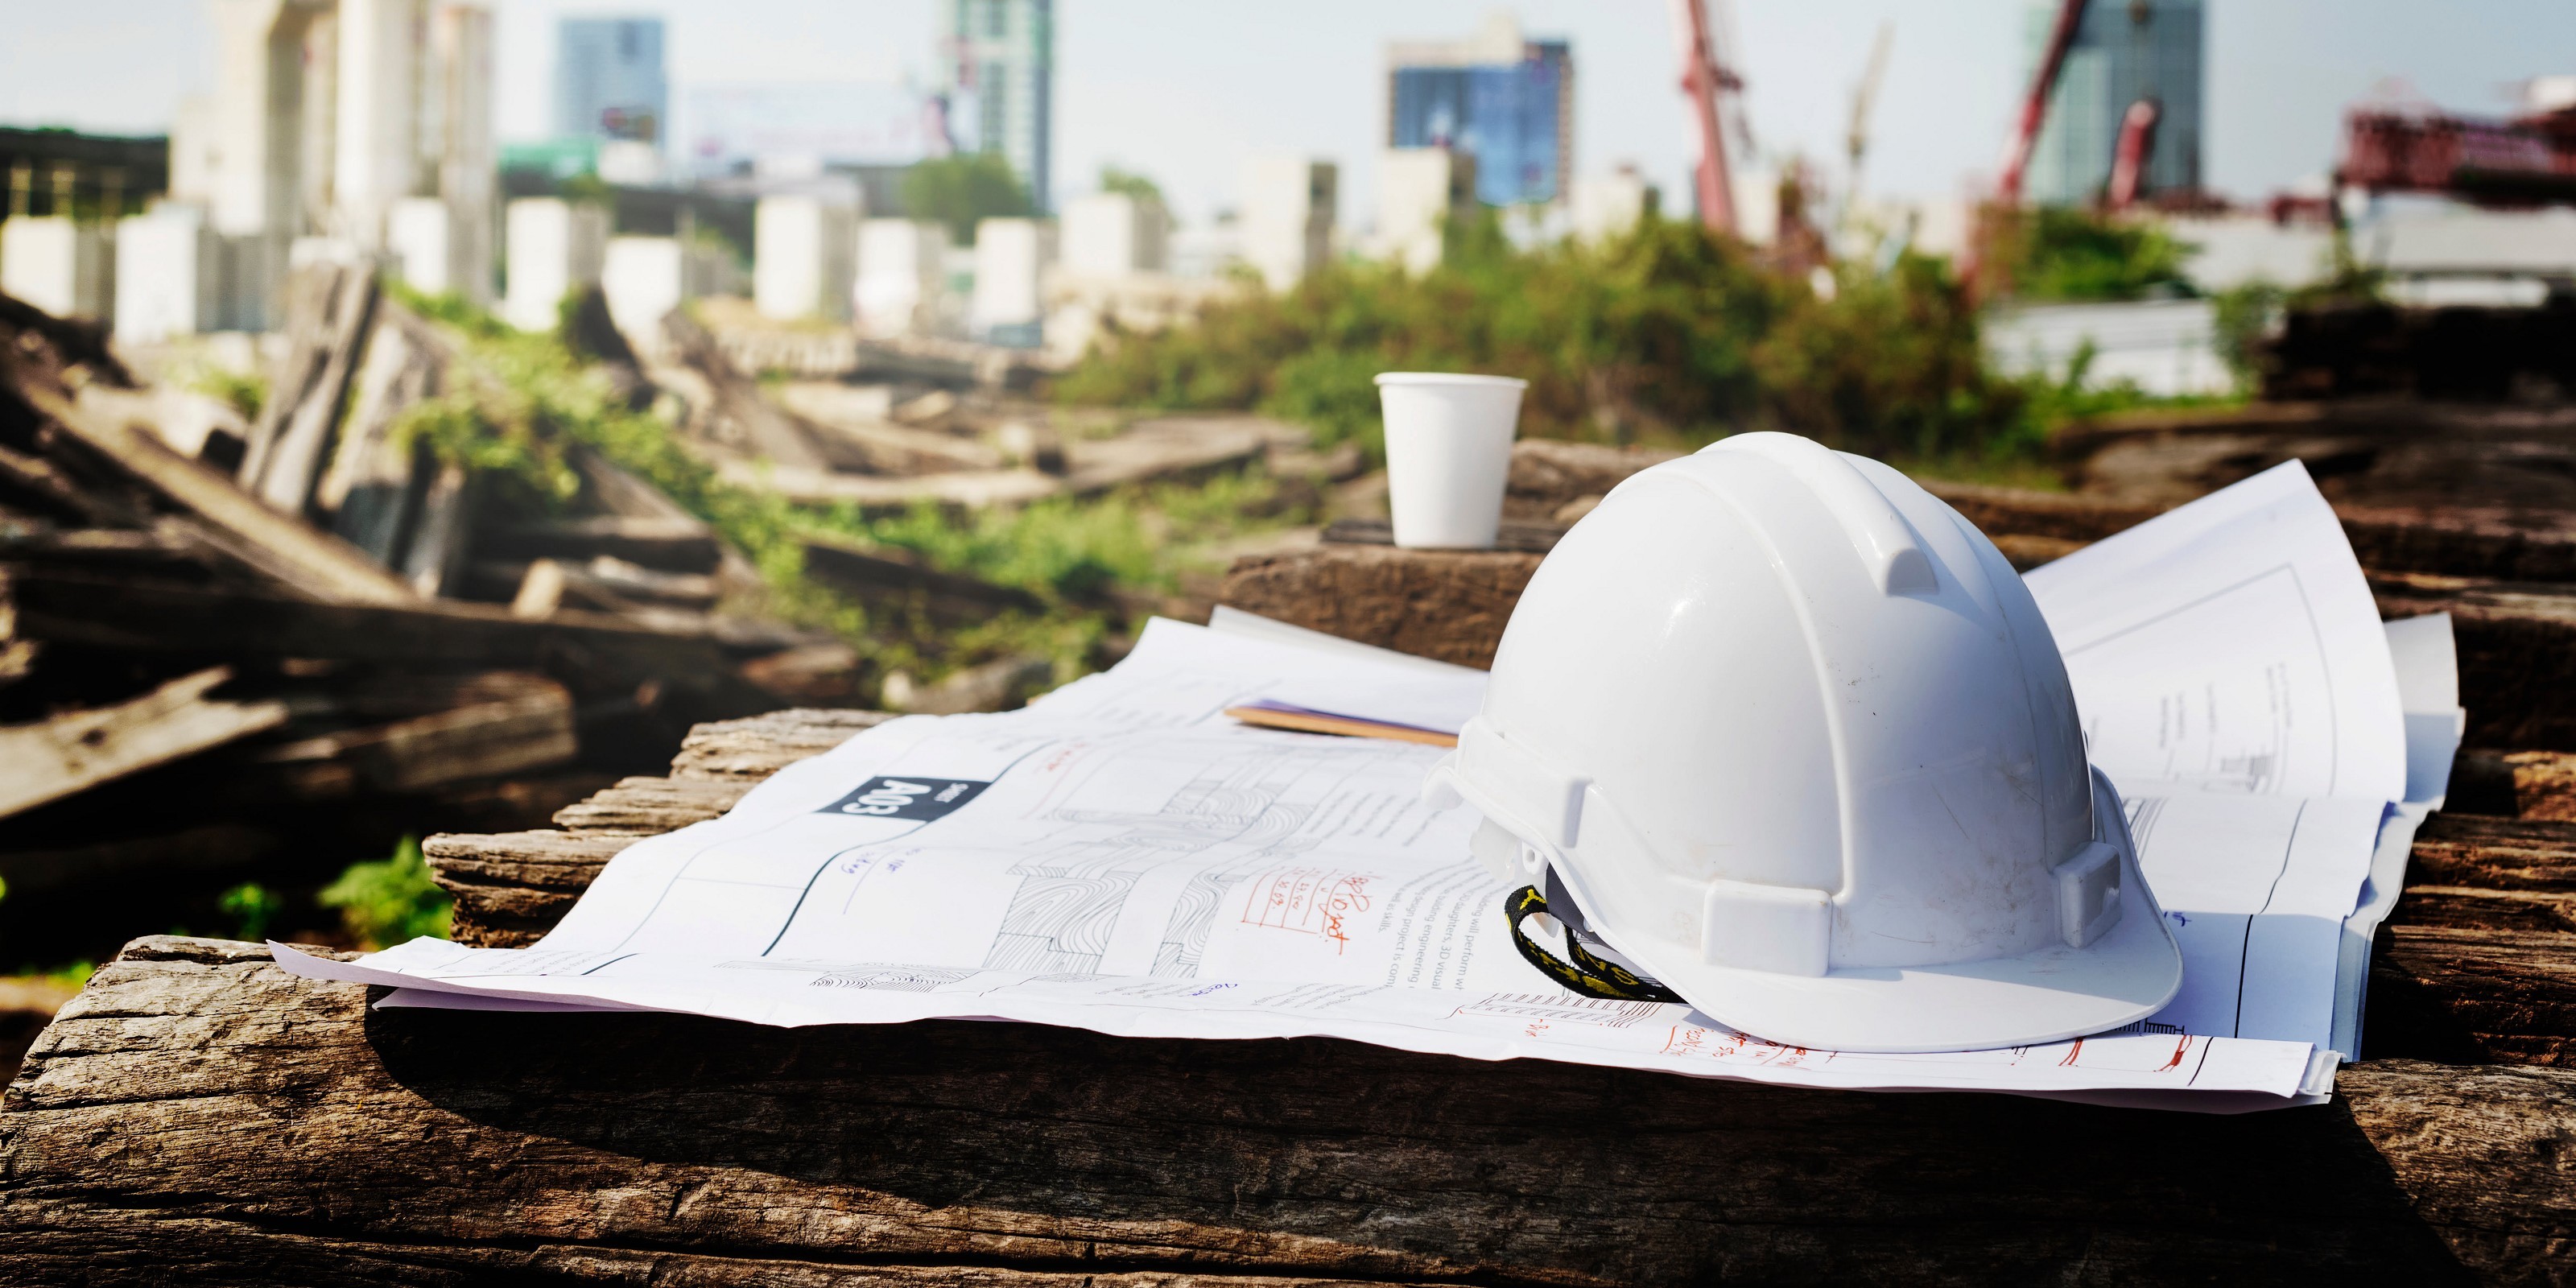 Construction Project Management Services